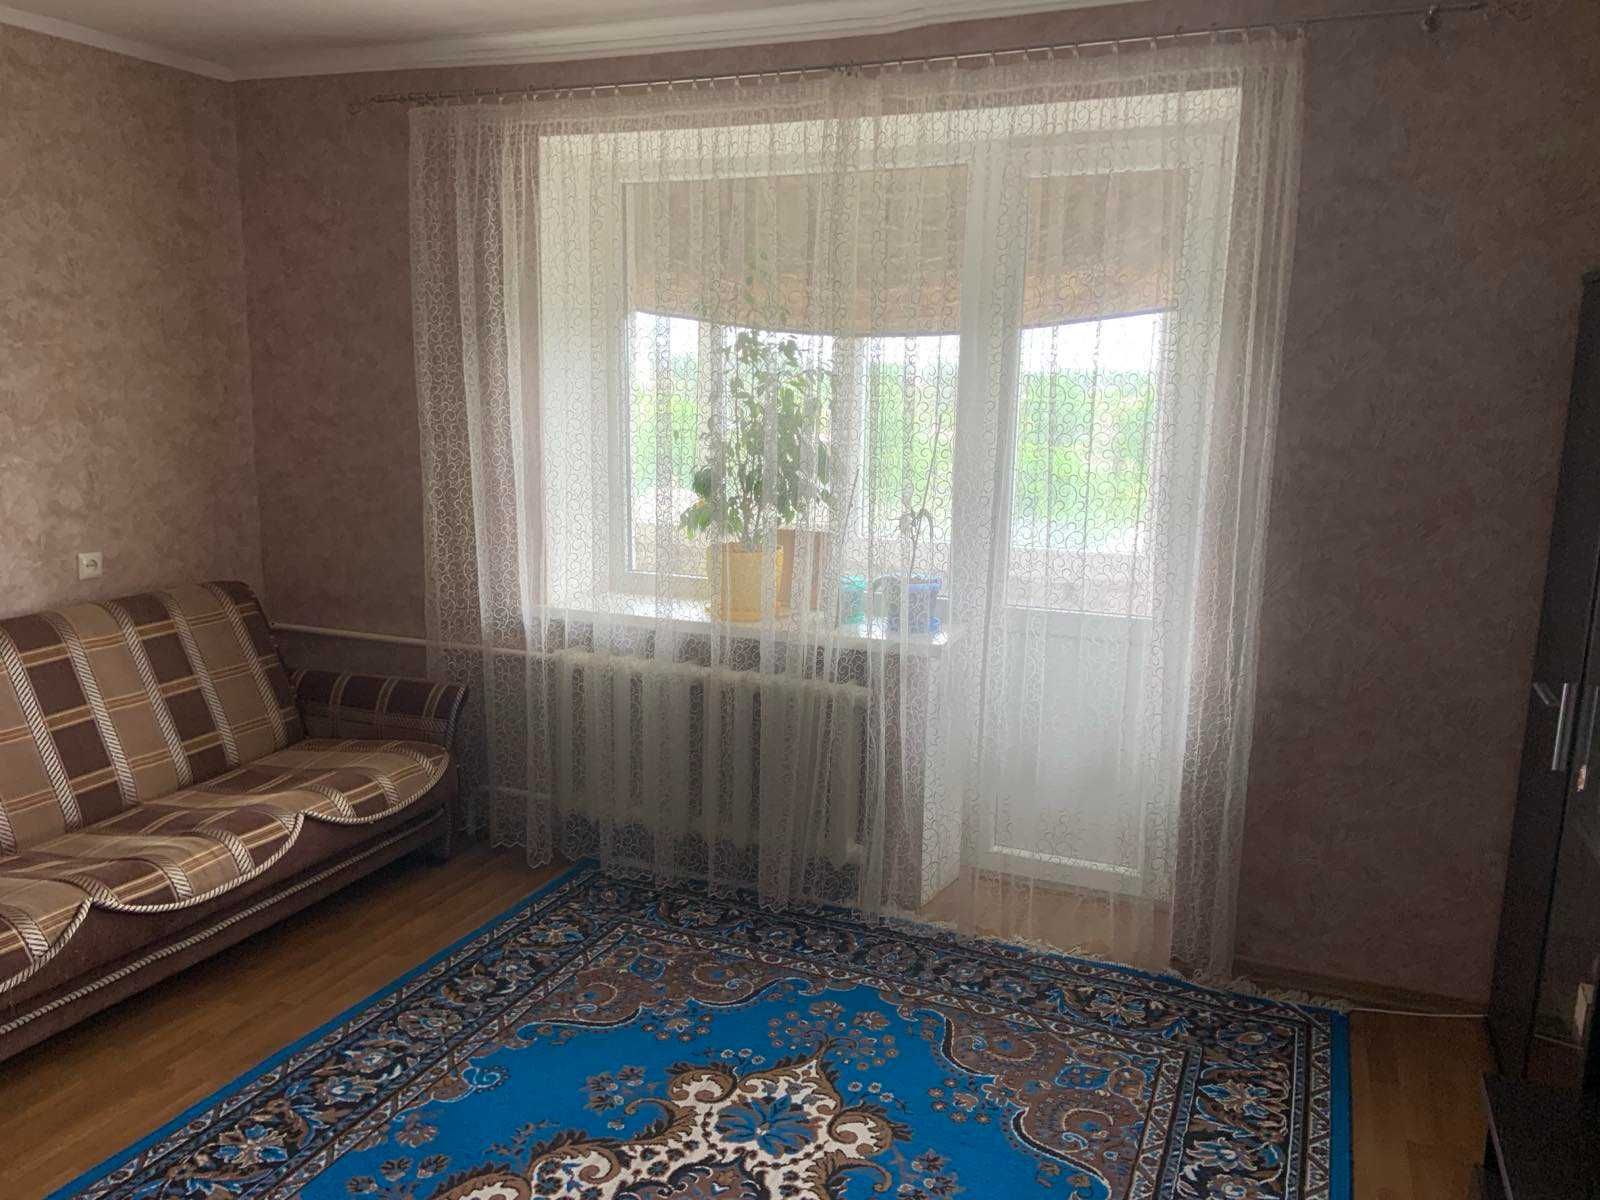 Продается 3 комнатная квартира в г. Славянске. Продажа по сертификату.